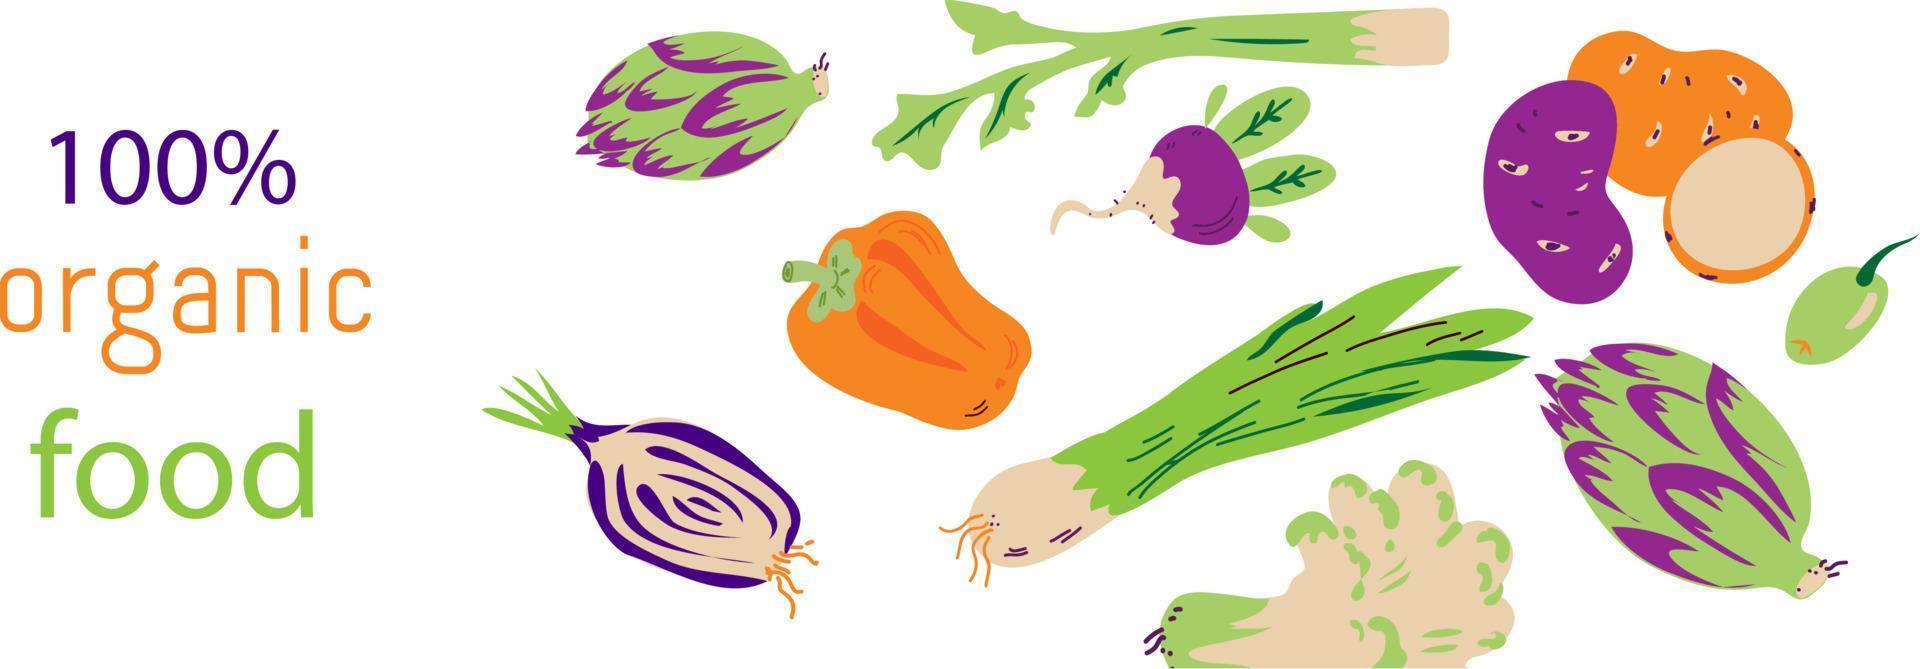 disegno della bandiera dell'aletta di filatoio delle verdure, illustrazione di vettore. sfondo decorativo per volantino o negozio vegano o mercato agricolo con verdure. vettore